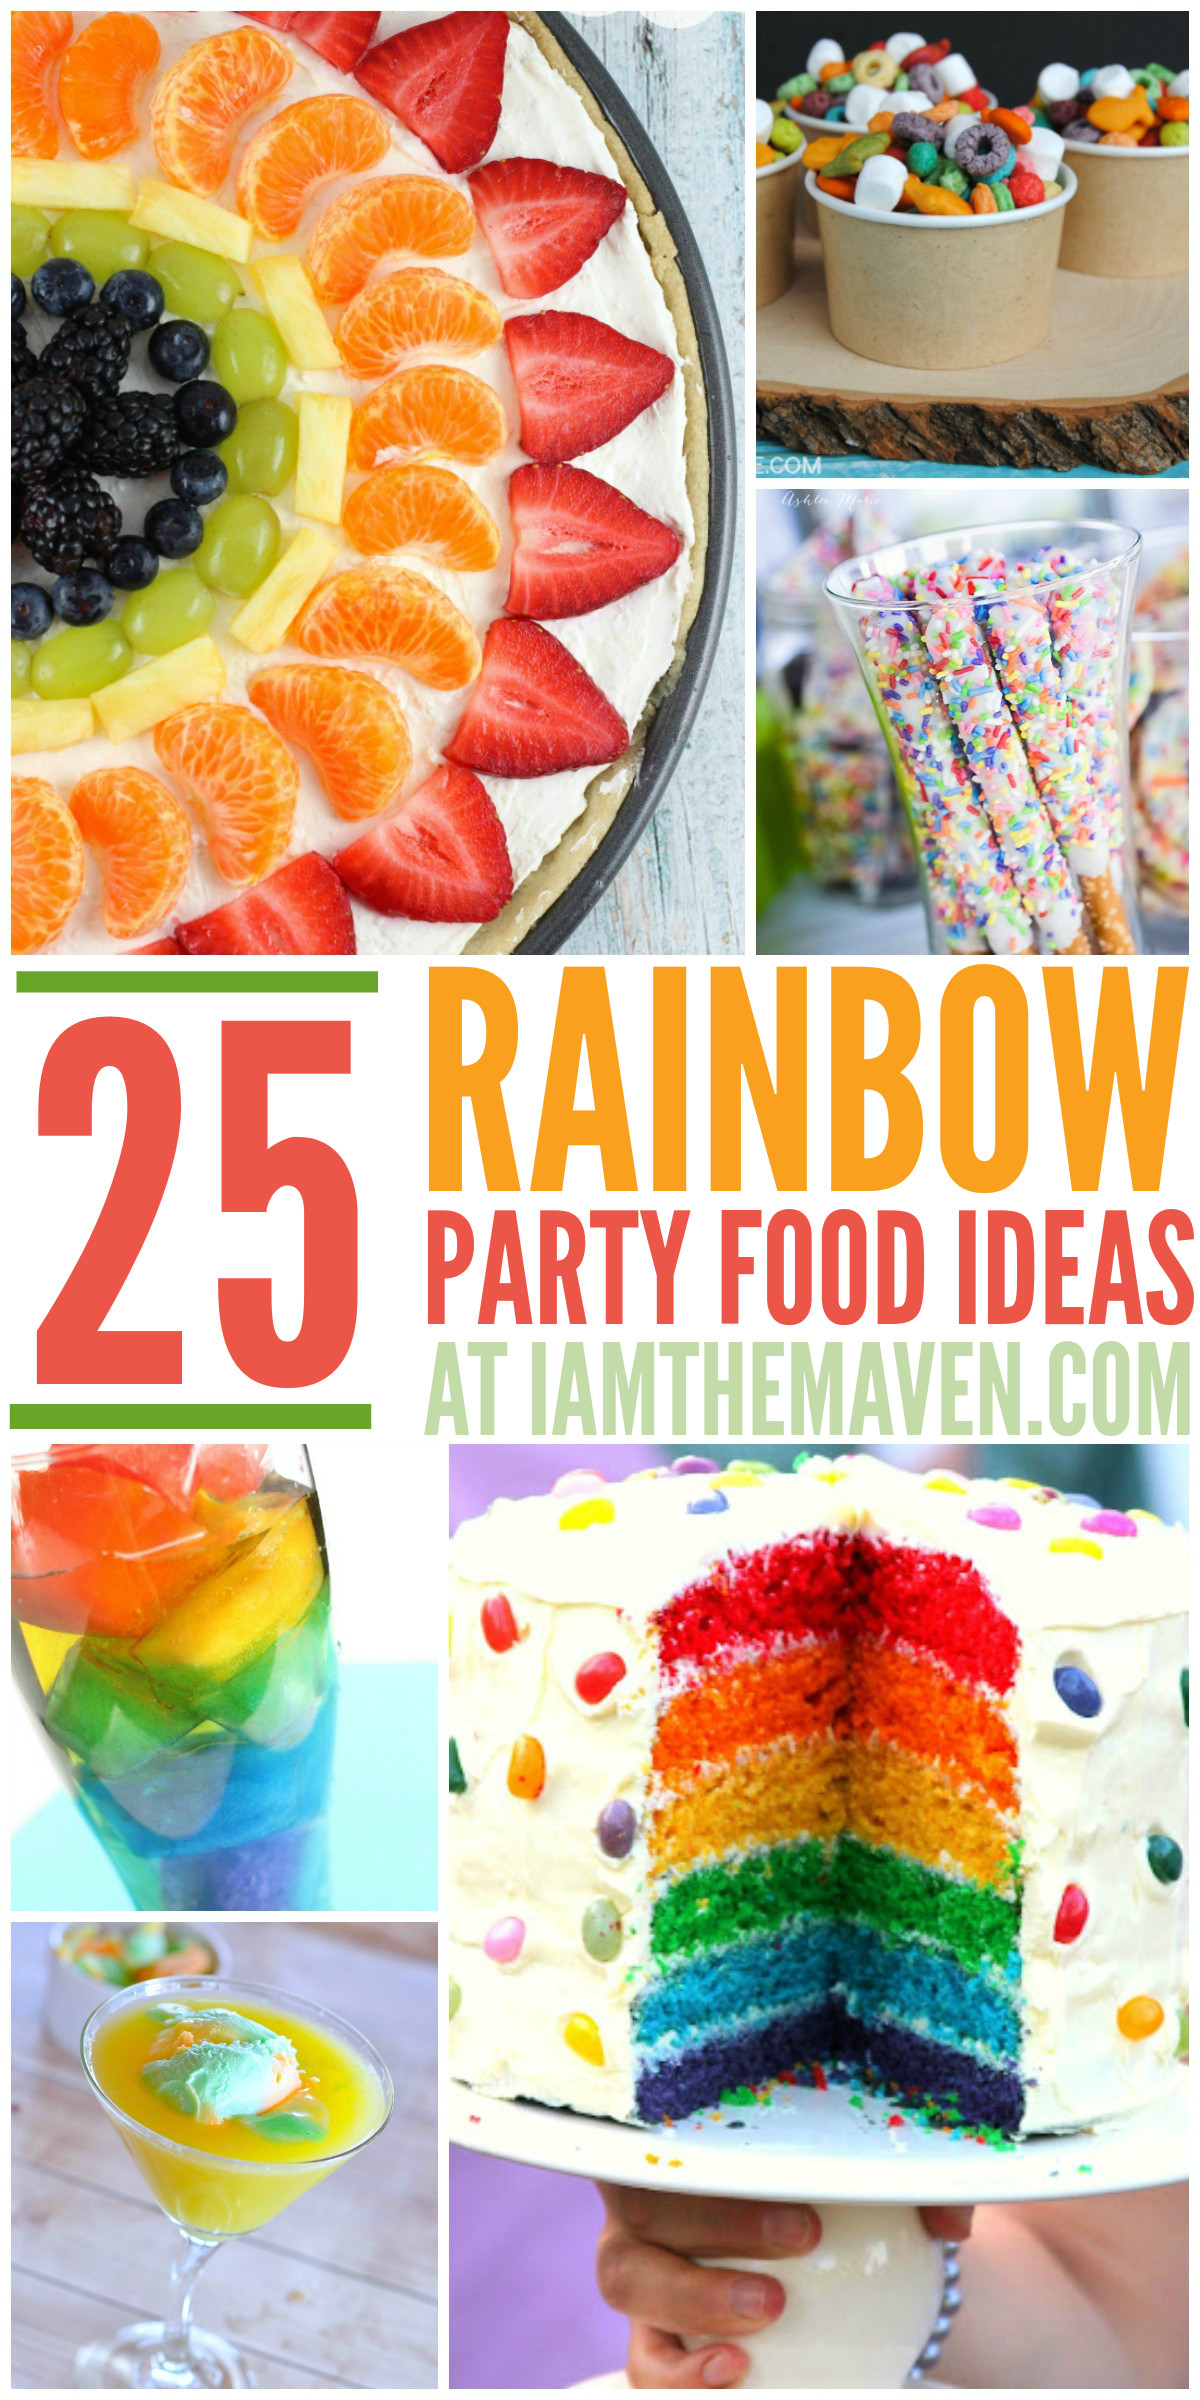 Rainbow Party Ideas Food
 25 Rainbow Party Food Ideas